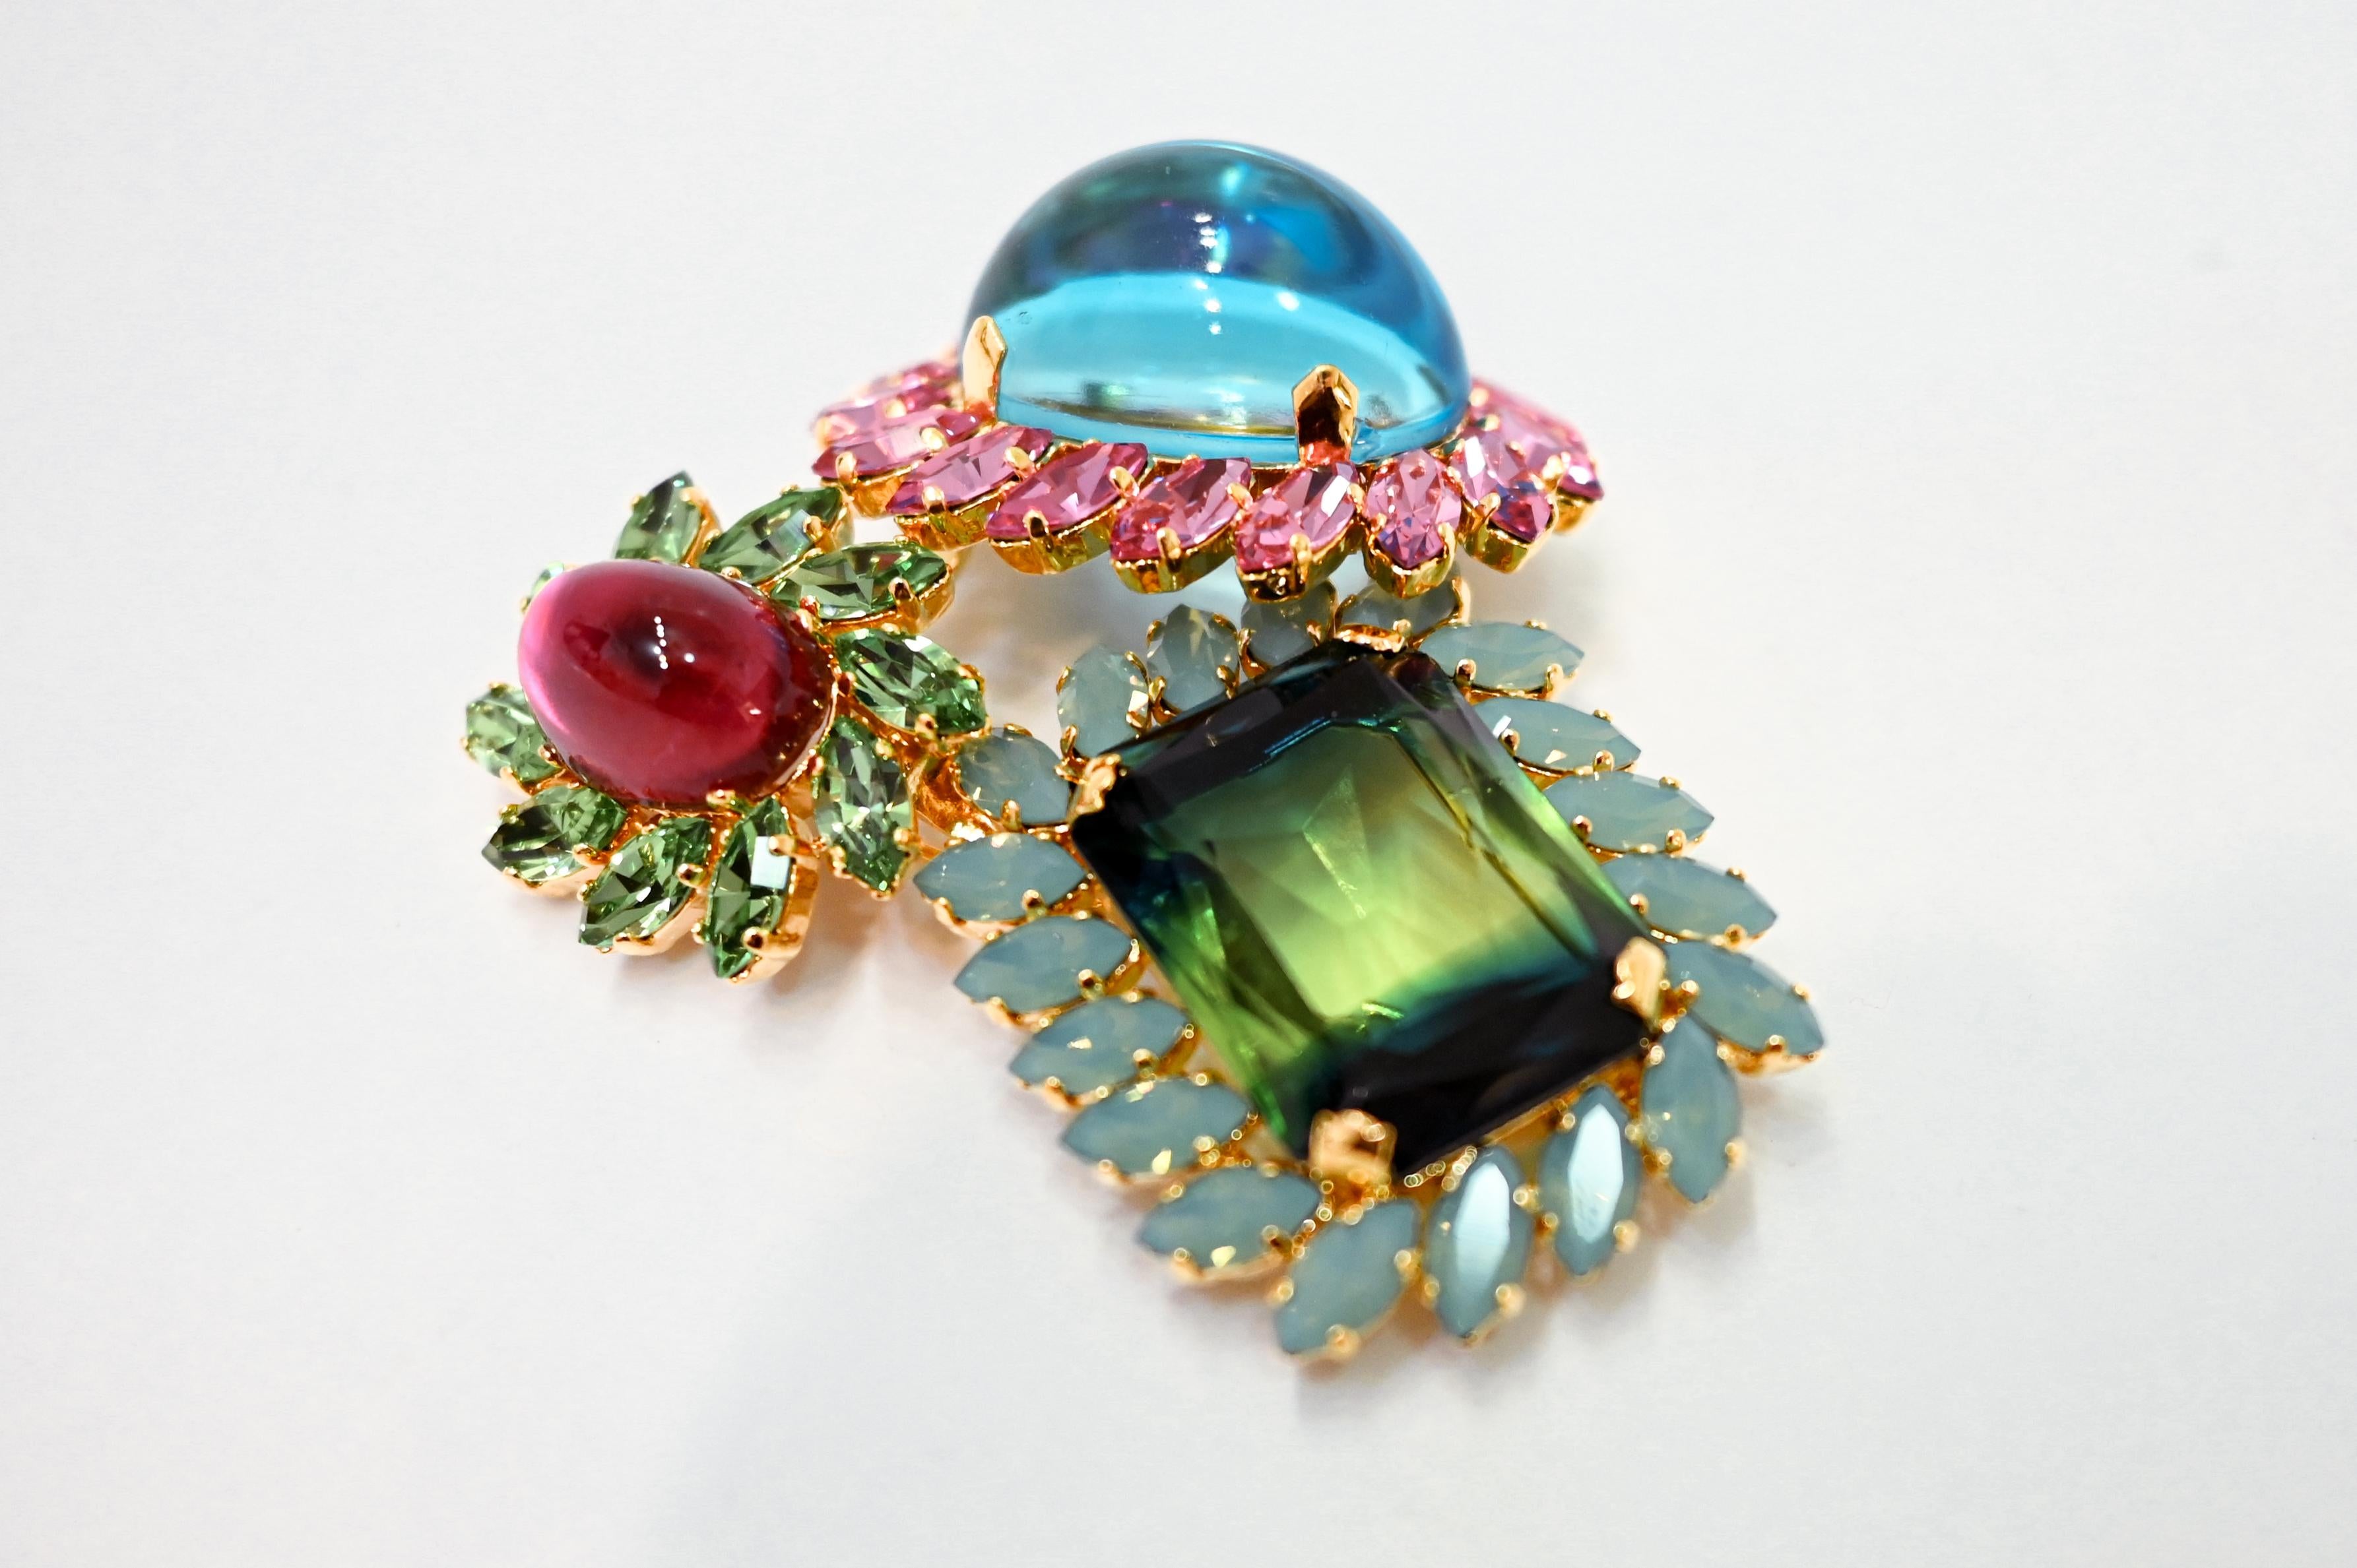 Swarovski Kristall Brosche in Bonbonfarben. 1 von 2 speziell für Isabelle K Jewelry im Atelier von Philippe Ferrandis in Paris hergestellt.
Philippe Ferrandis ist seit 1986 als Parurier in Paris tätig. Er kreiert zwei Kollektionen pro Jahr, die